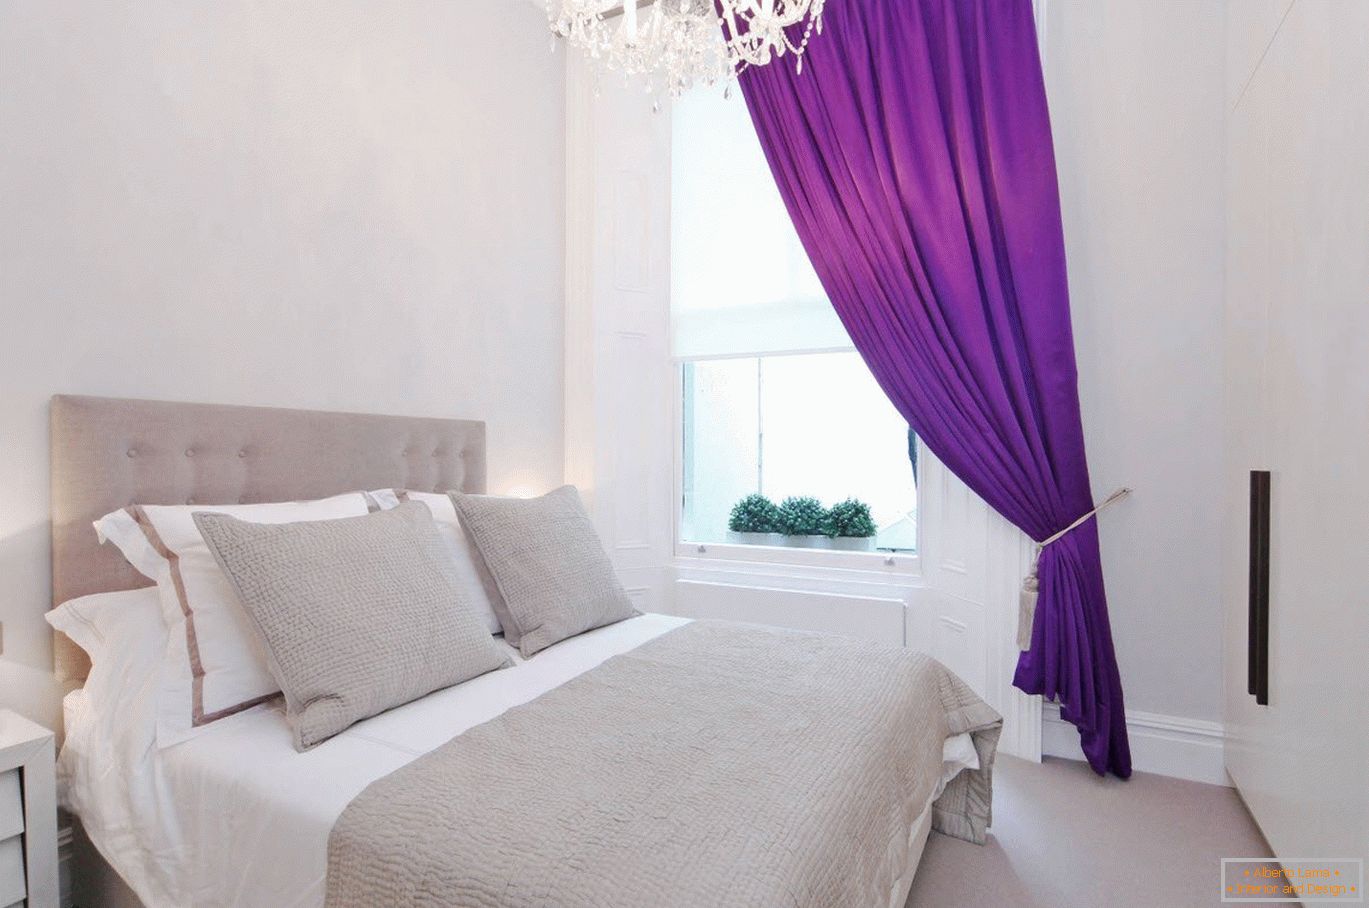 Vijolične zavese v beli notranjosti spalnice